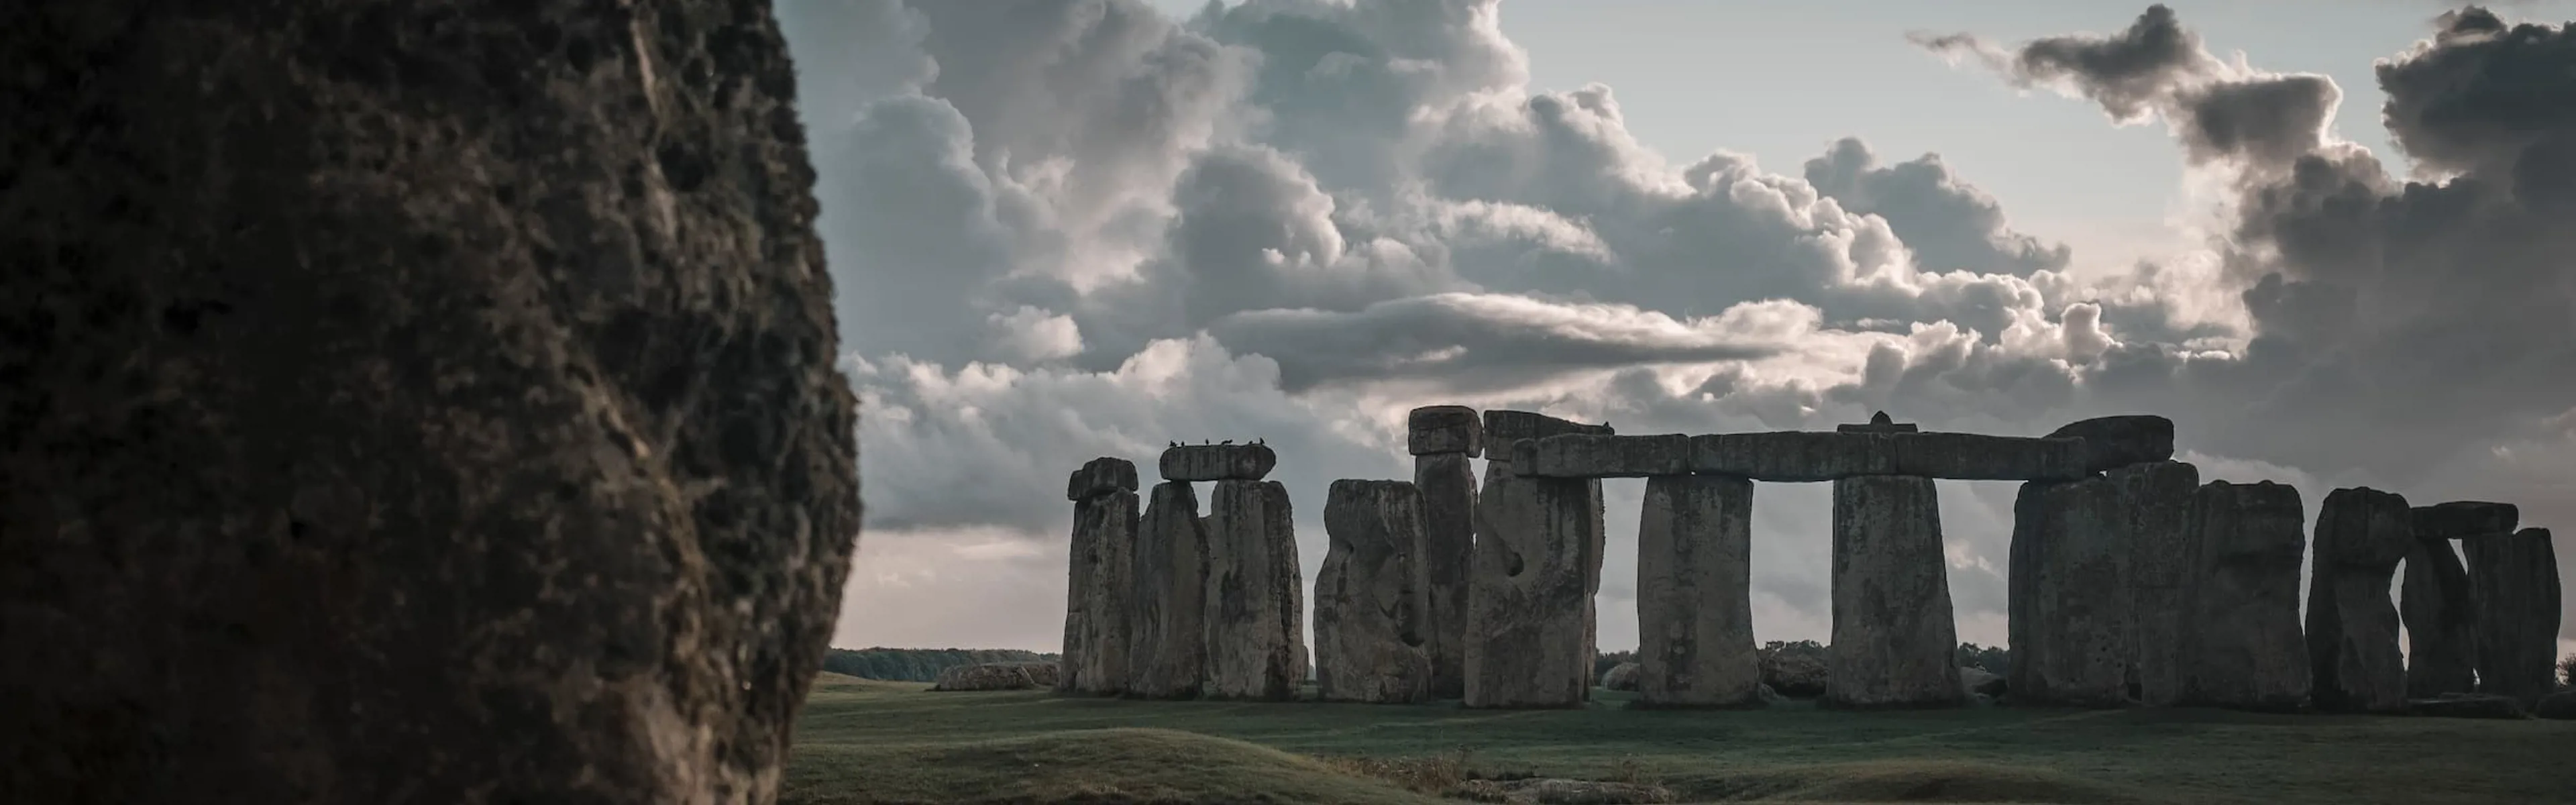 Stonehenge background image